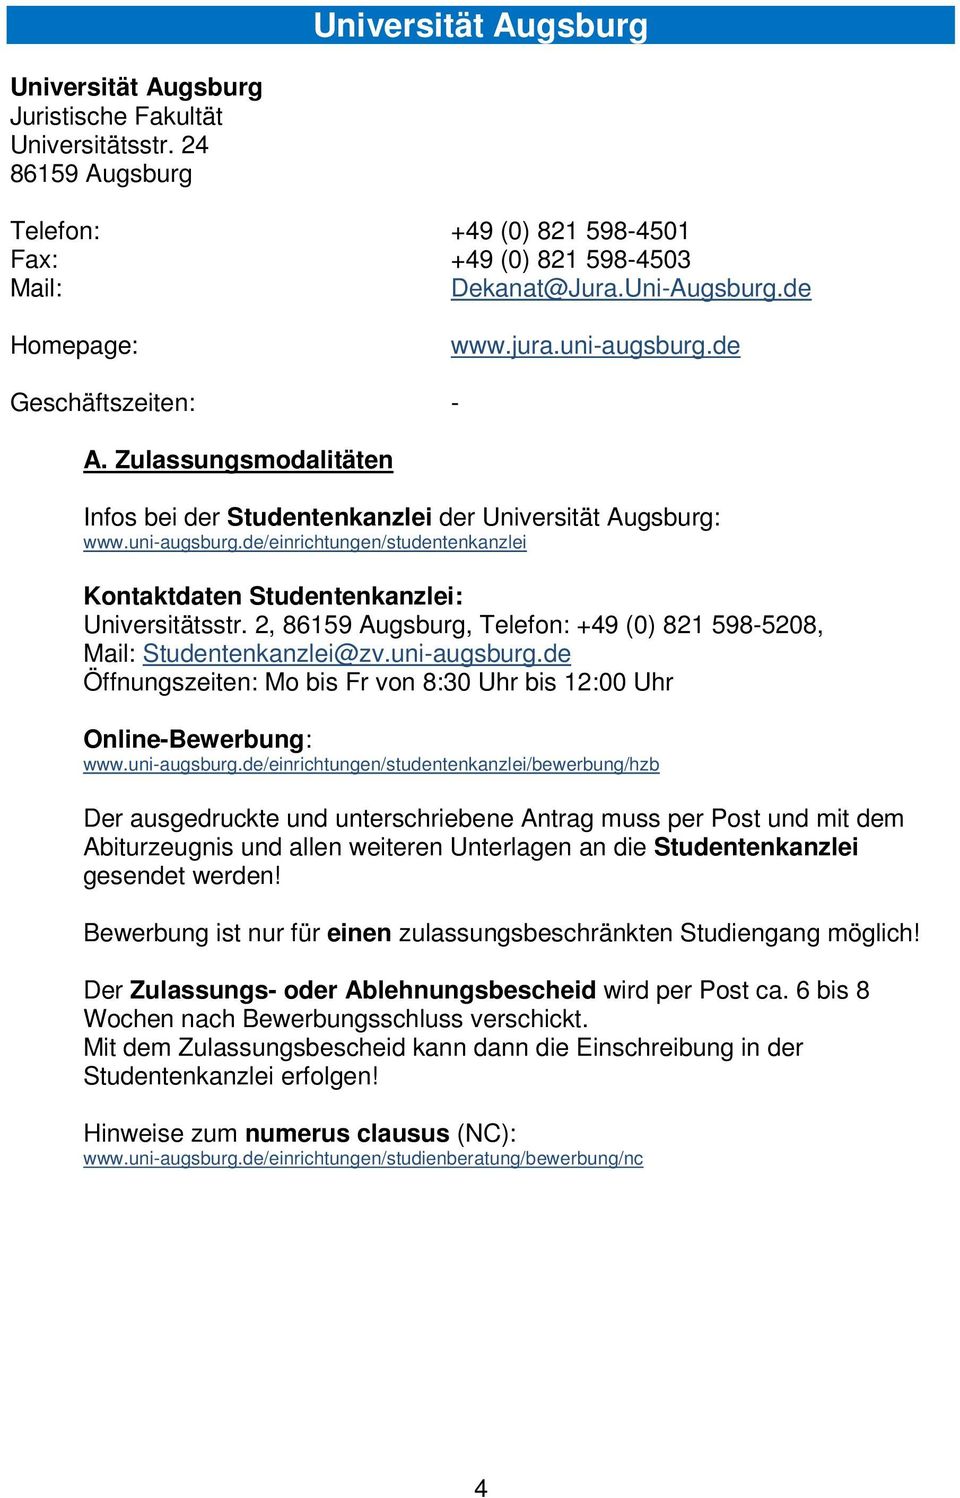 2, 86159 Augsburg, Telefon: +49 (0) 821 598-5208, Mail: Studentenkanzlei@zv.uni-augsburg.